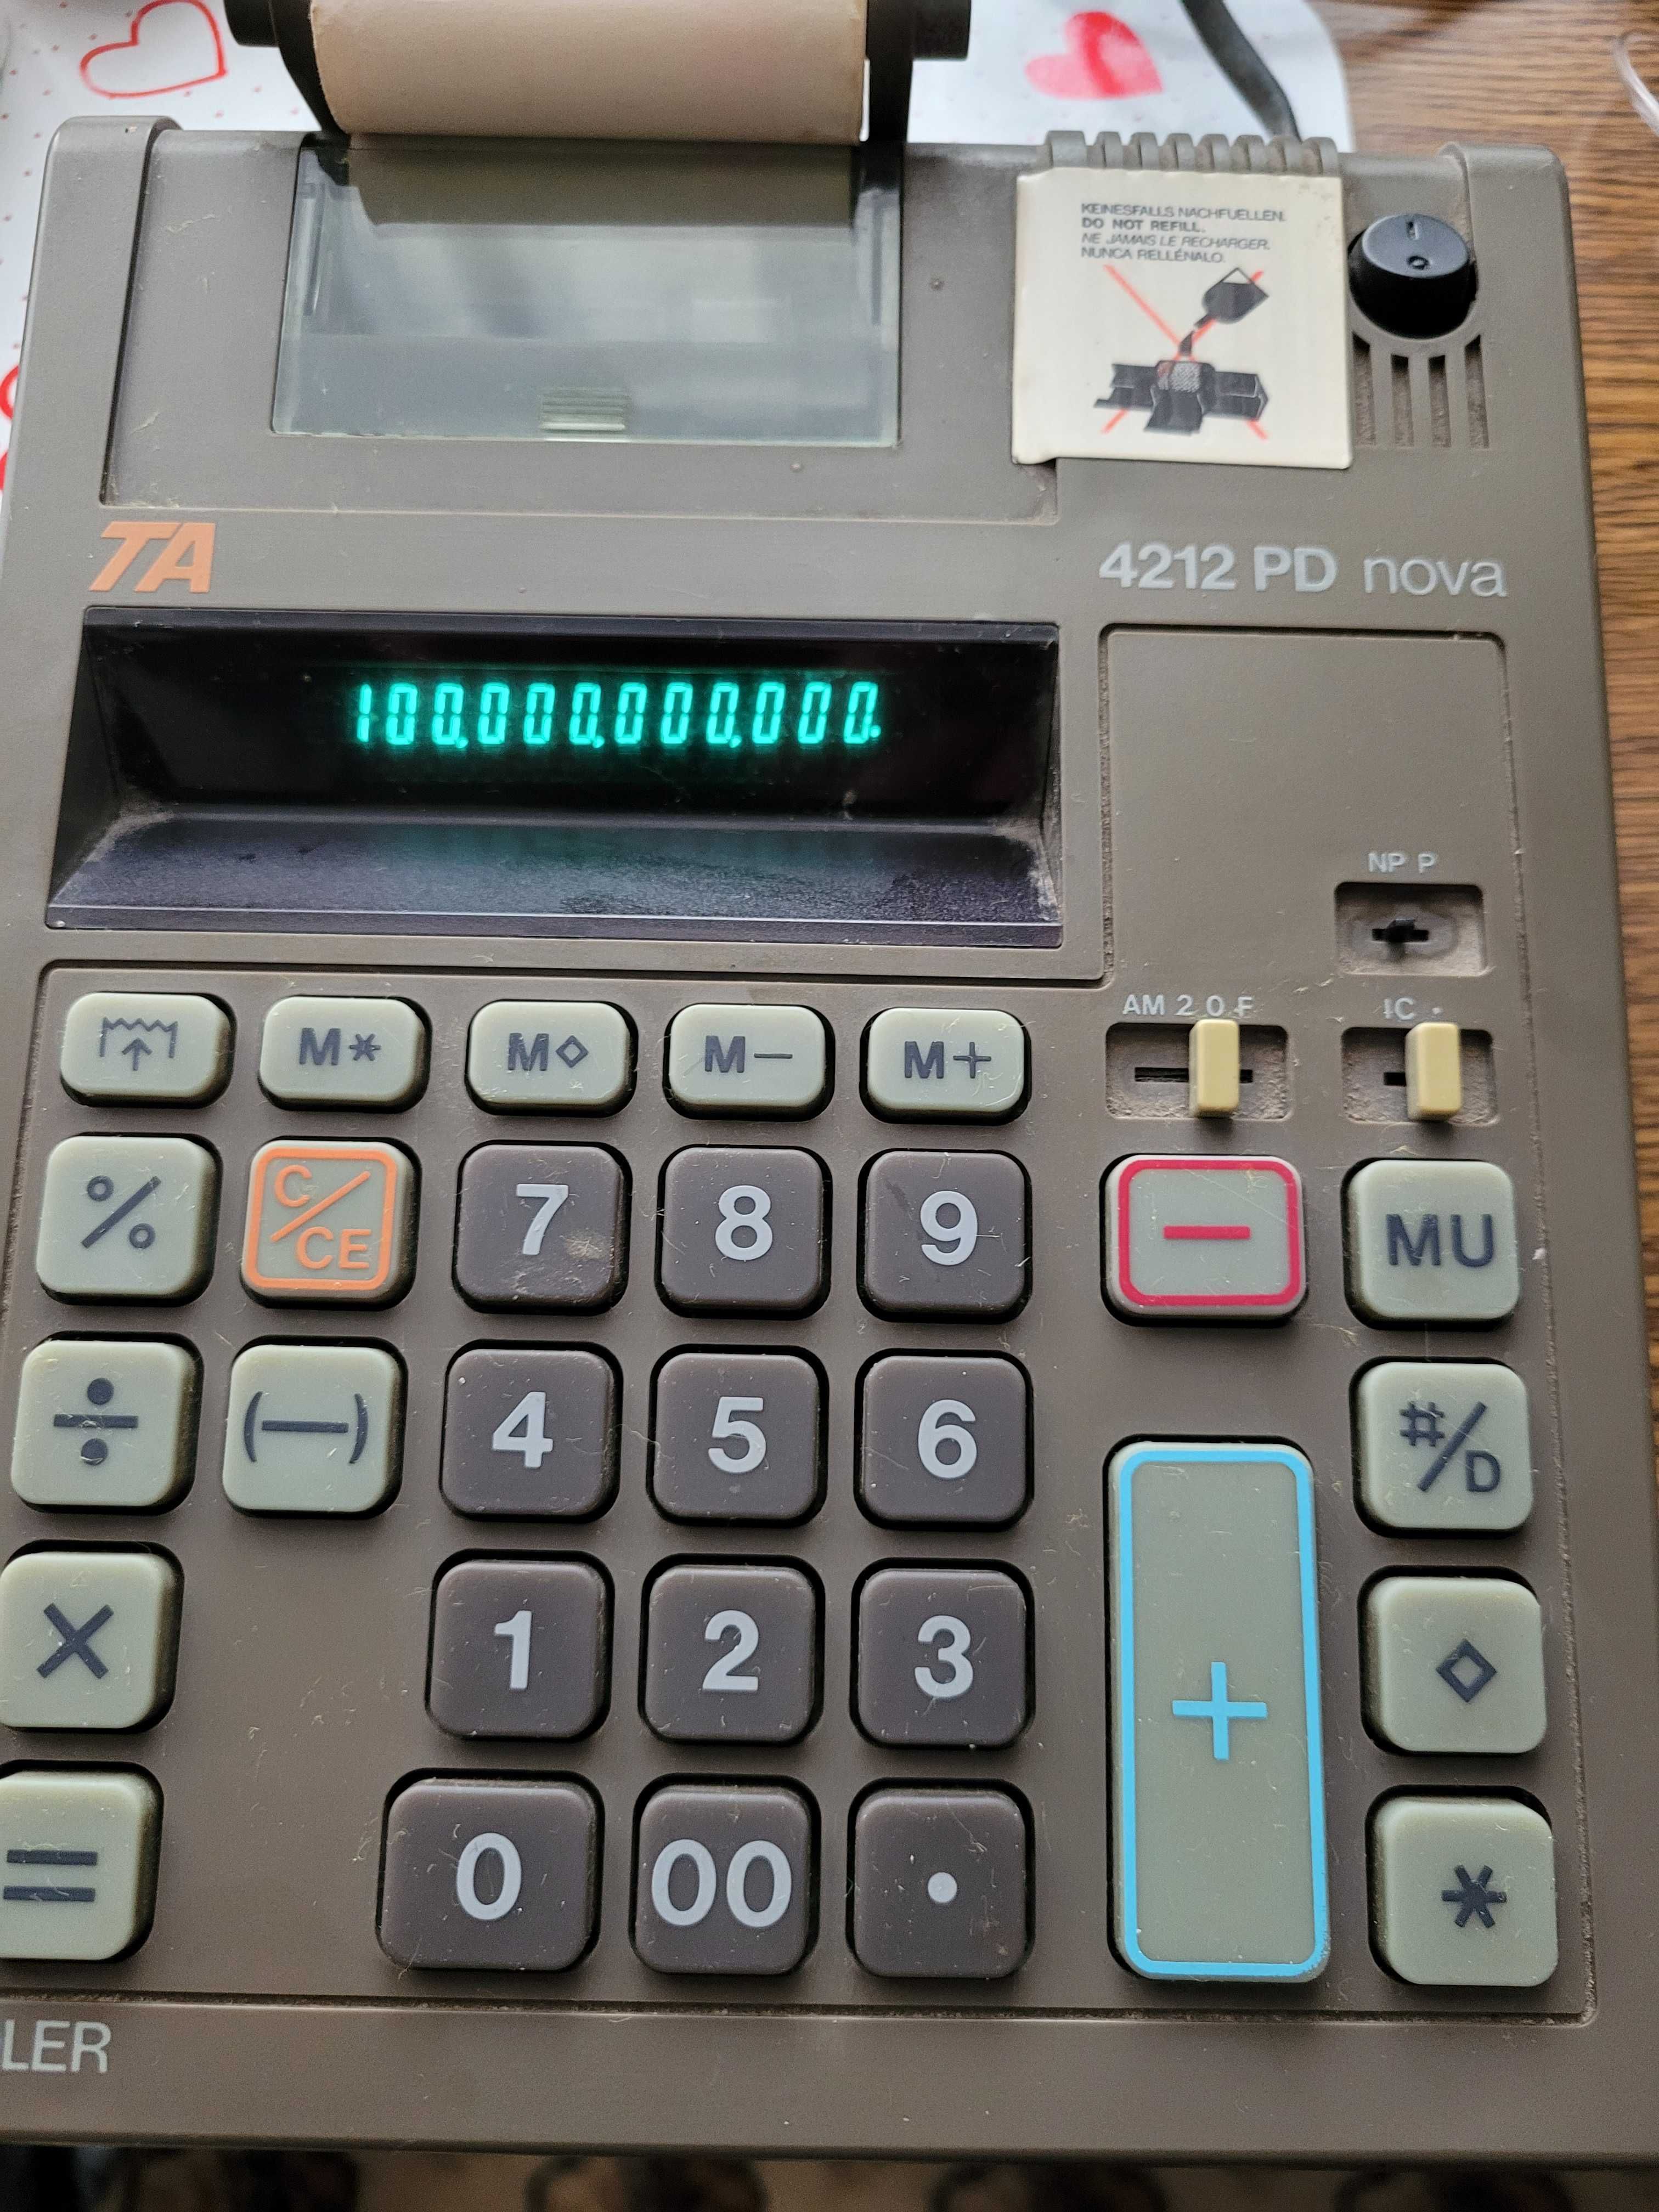 Kalkulator z drukarką TRIUMPH Adler 4212 PD nova